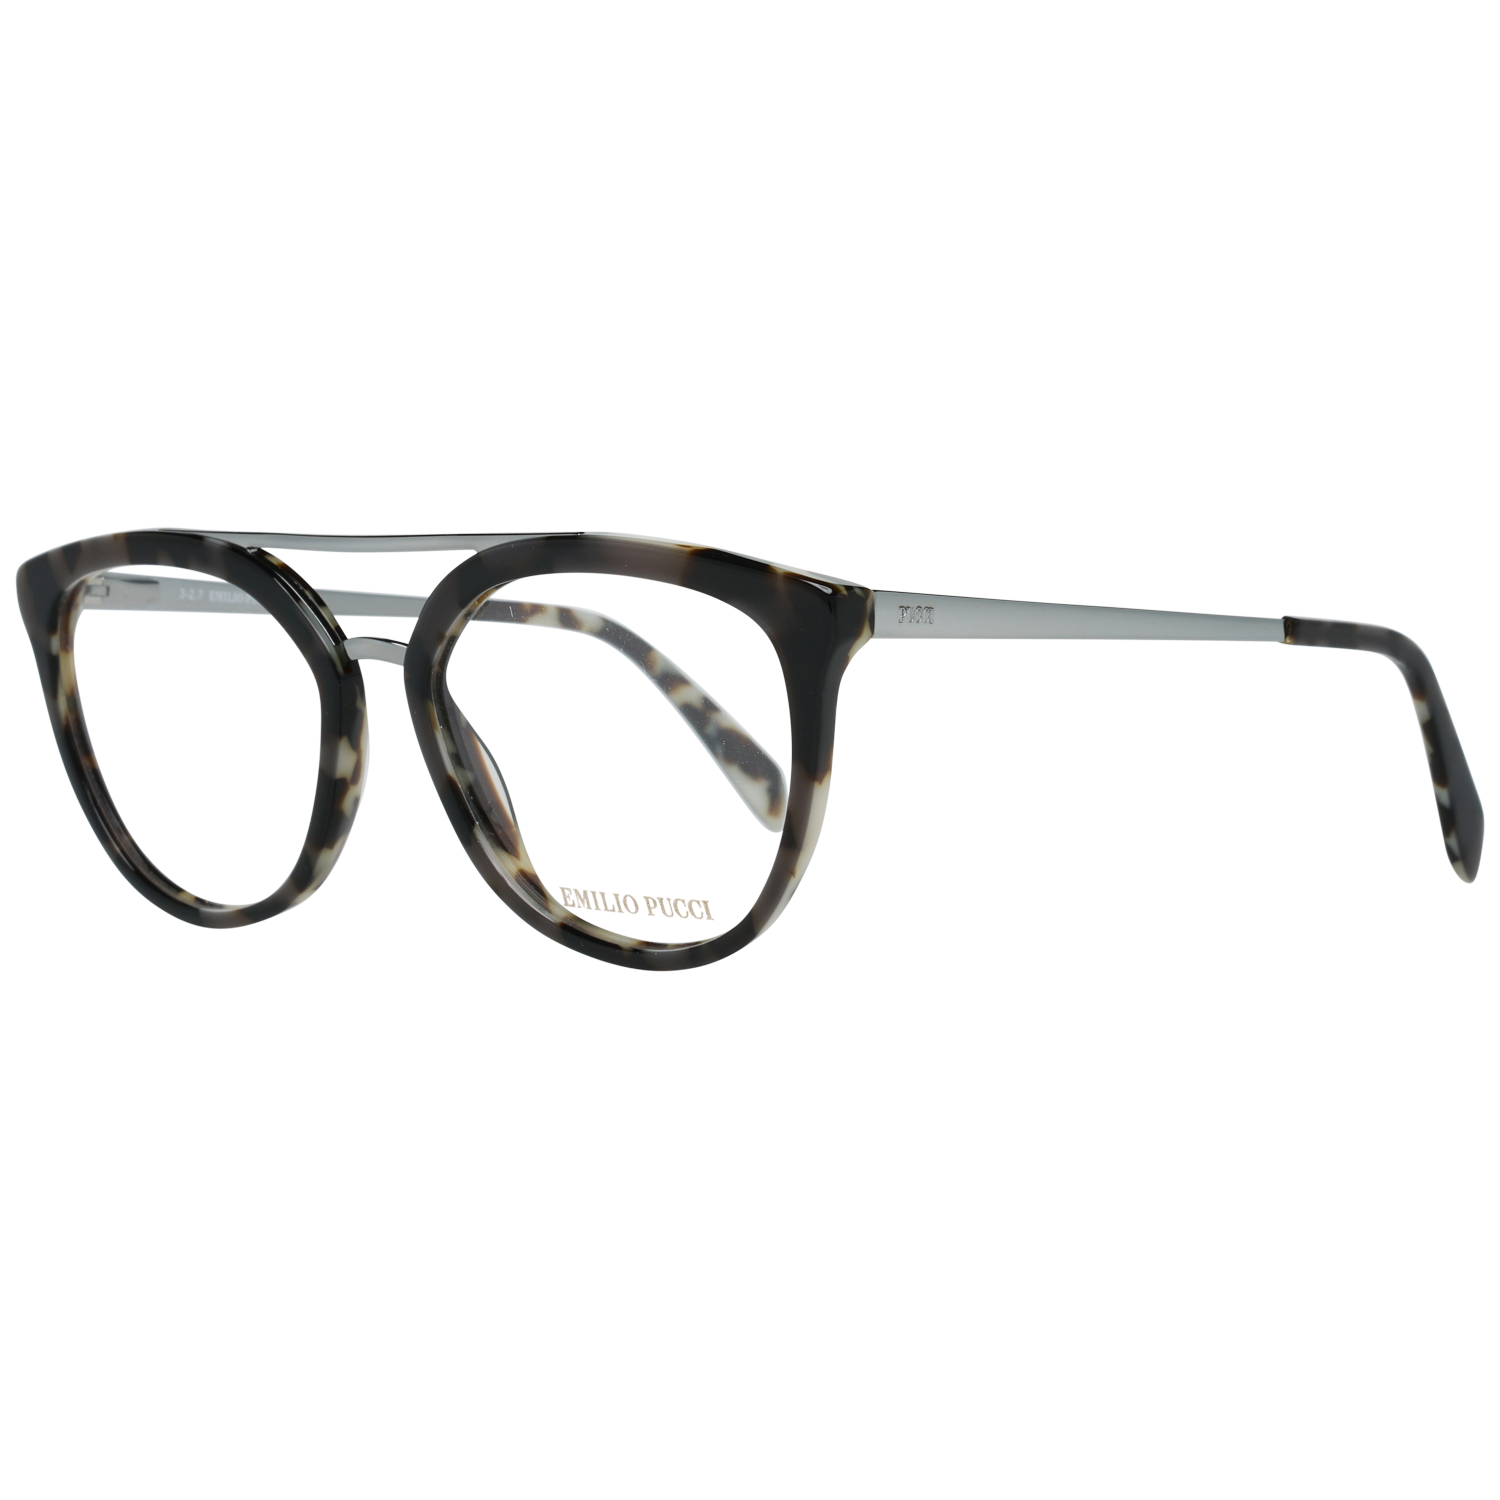 Emilio Pucci Optical Frame Emilio Pucci Optical Frame EP5072 020 52 Eyeglasses Eyewear UK USA Australia 